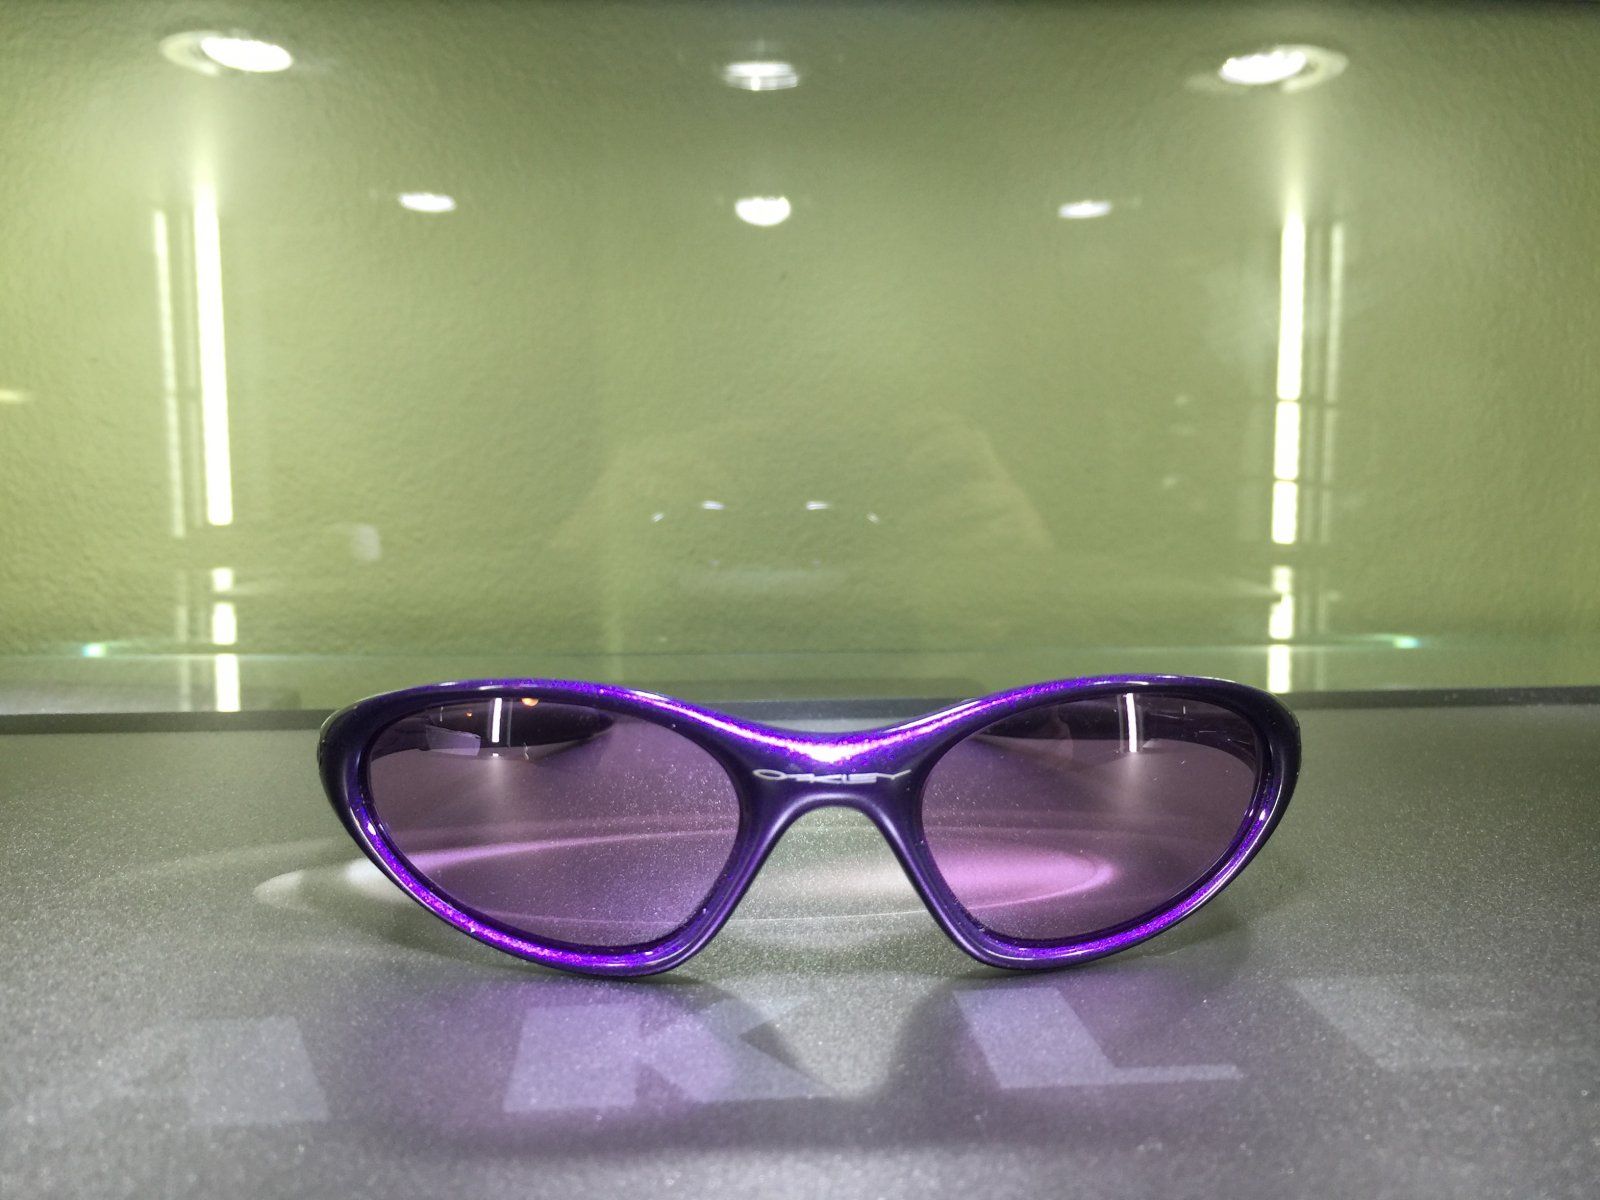 Sold - Minute violet/violet | Oakley Forum